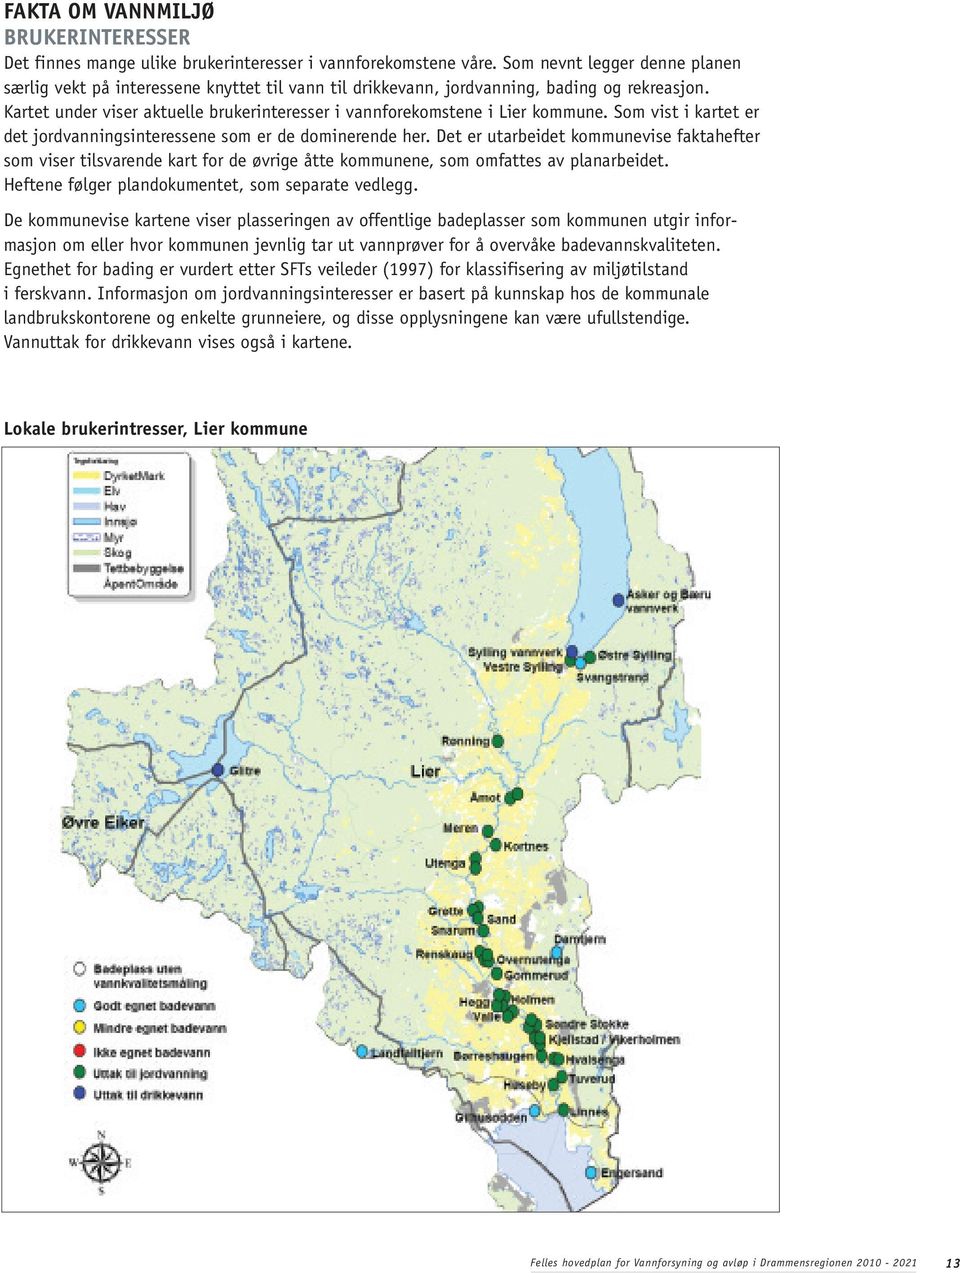 Kartet under viser aktuelle brukerinteresser i vannforekomstene i Lier kommune. Som vist i kartet er det jordvanningsinteressene som er de dominerende her.